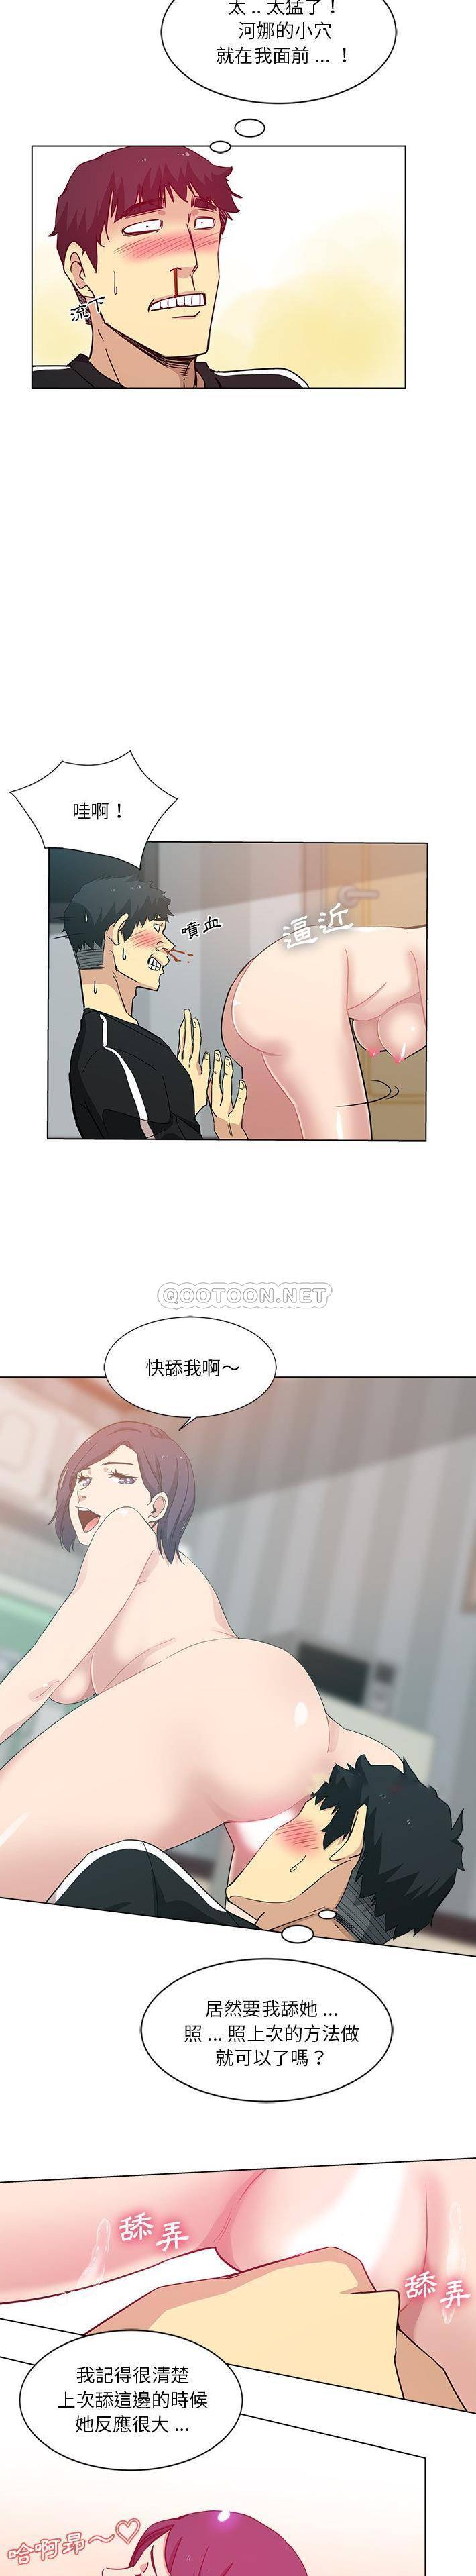 韩国污漫画 危險純友誼 第3话 3